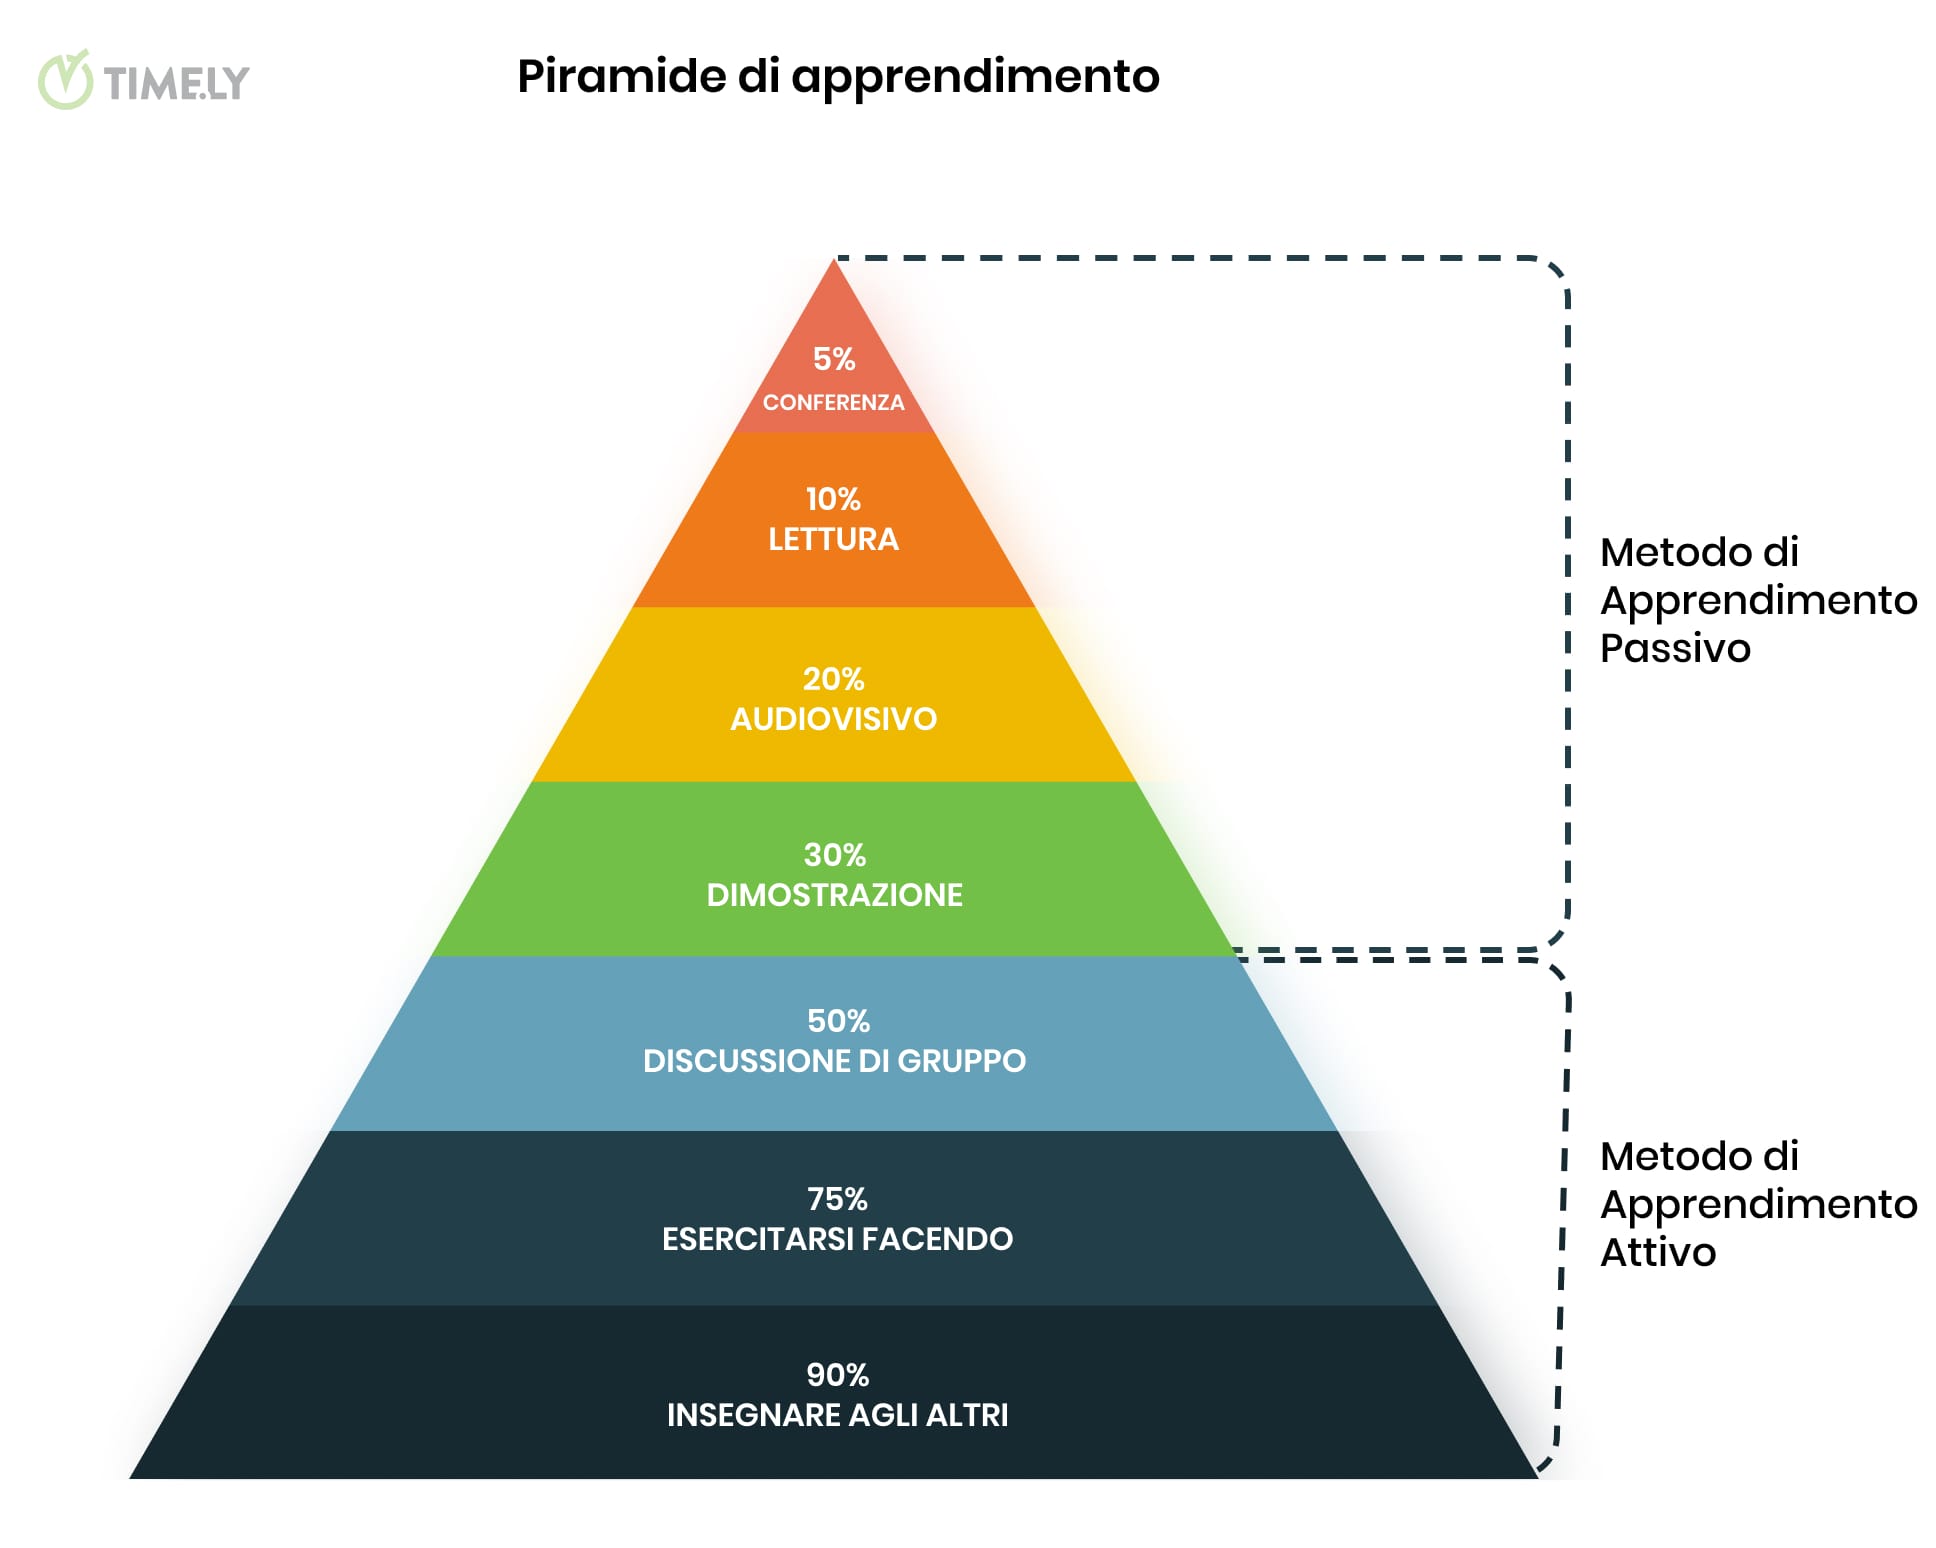 Un'immagine infografica descrittiva della Piramide dell'Apprendimento di Edgar Dale, con i metodi di apprendimento attivi e passivi illustrati e i rispettivi tassi di fidelizzazione.